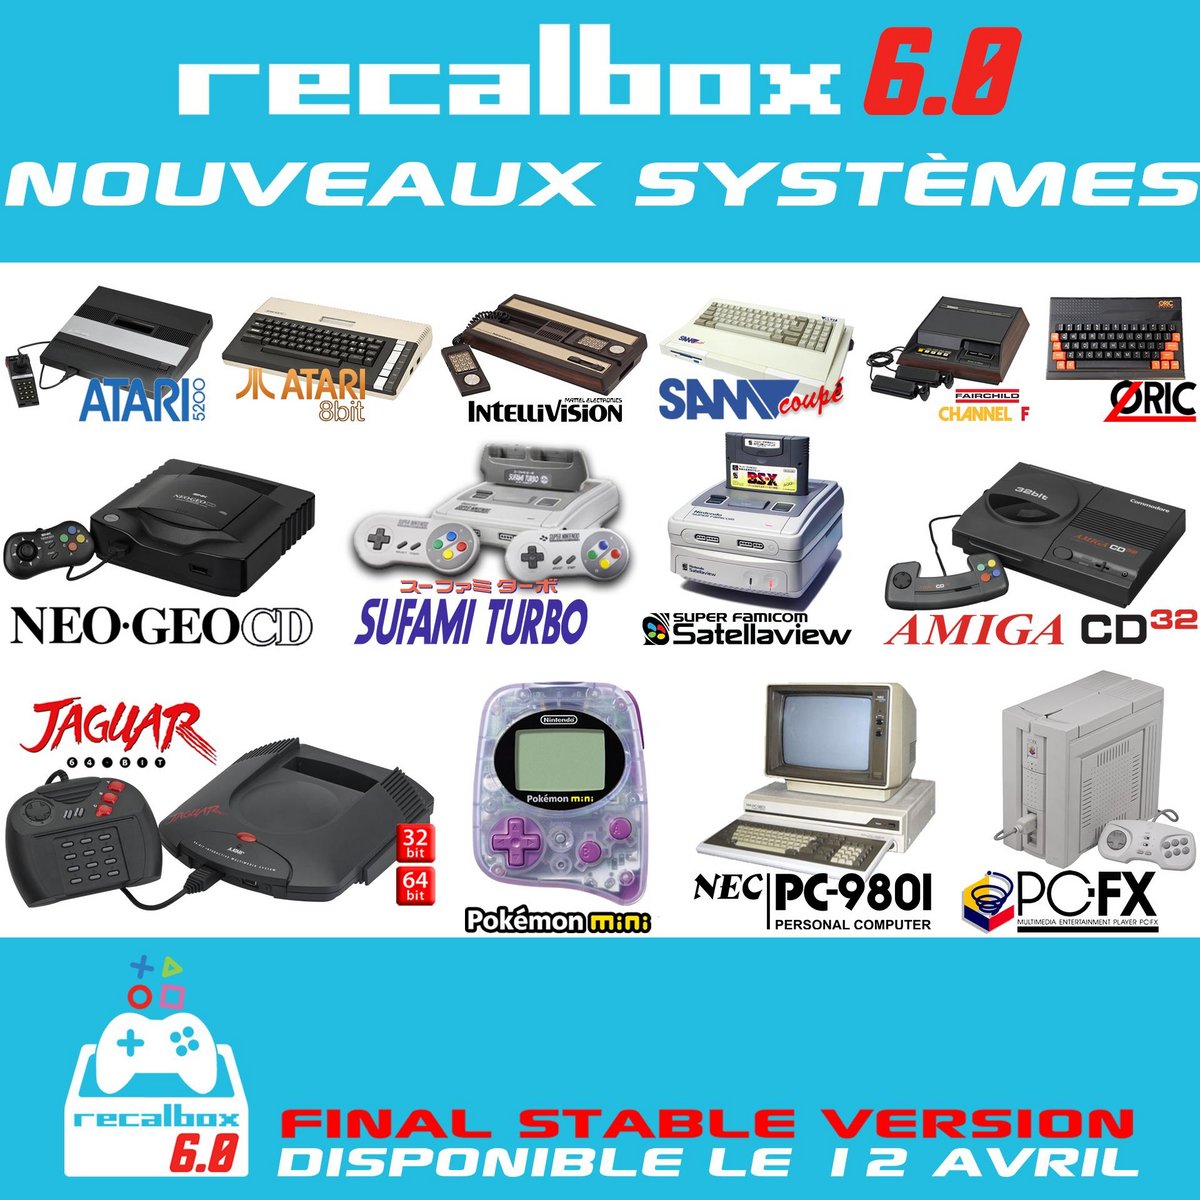 Nouveaux systèmes Recalbox 6.0 FR.jpg